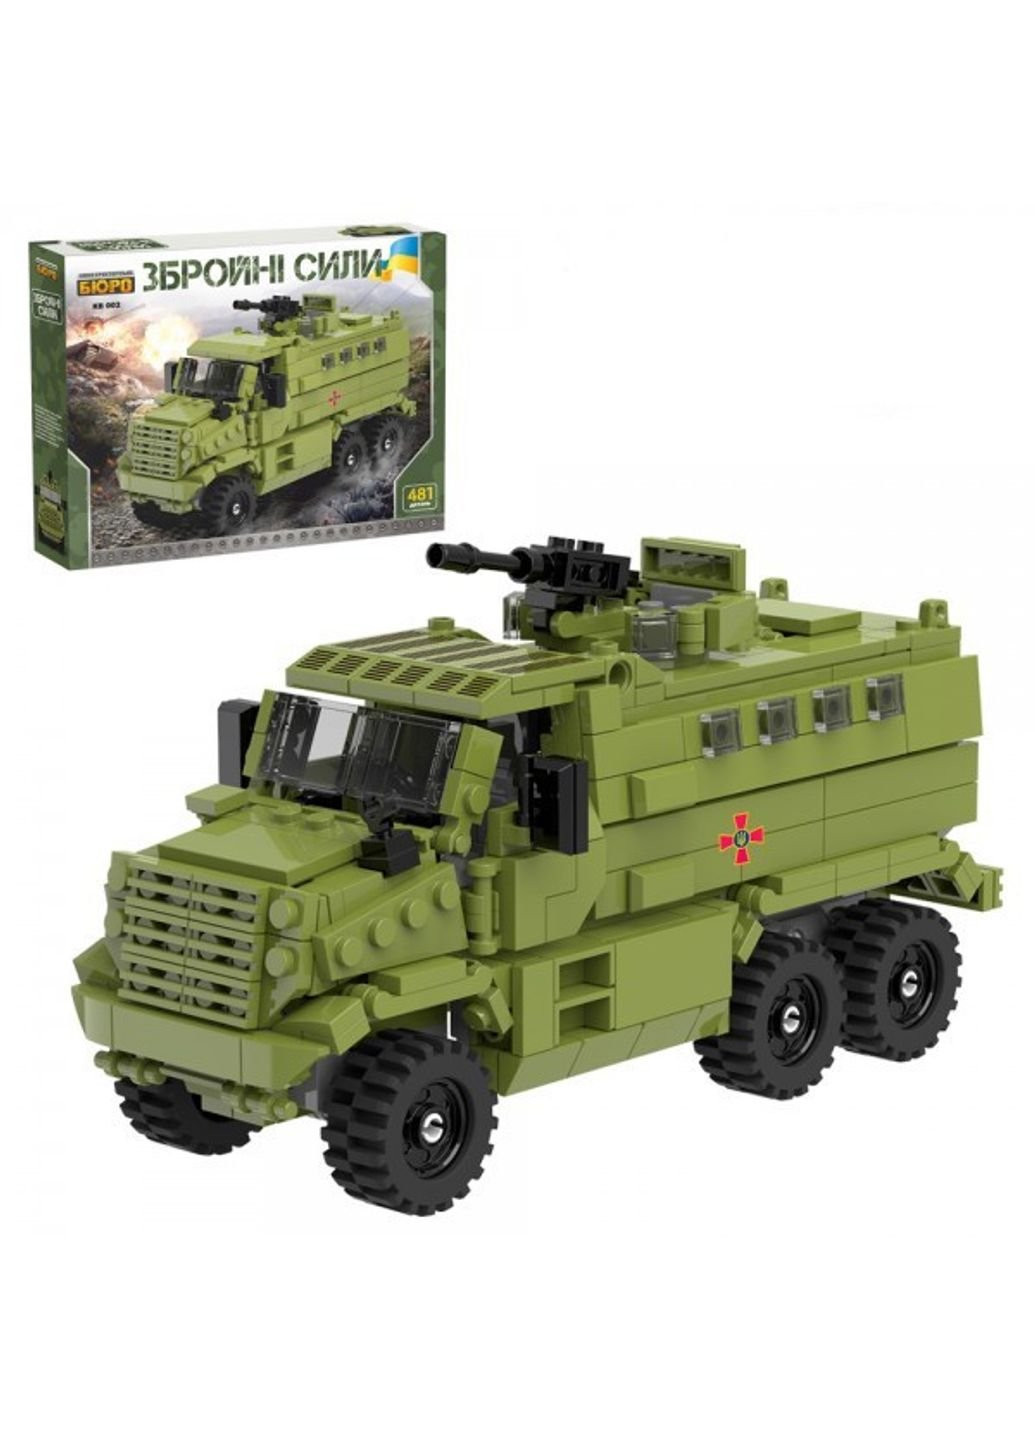 Конструктор Военная техника KB-002 481 деталь Limo Toy (253918857)